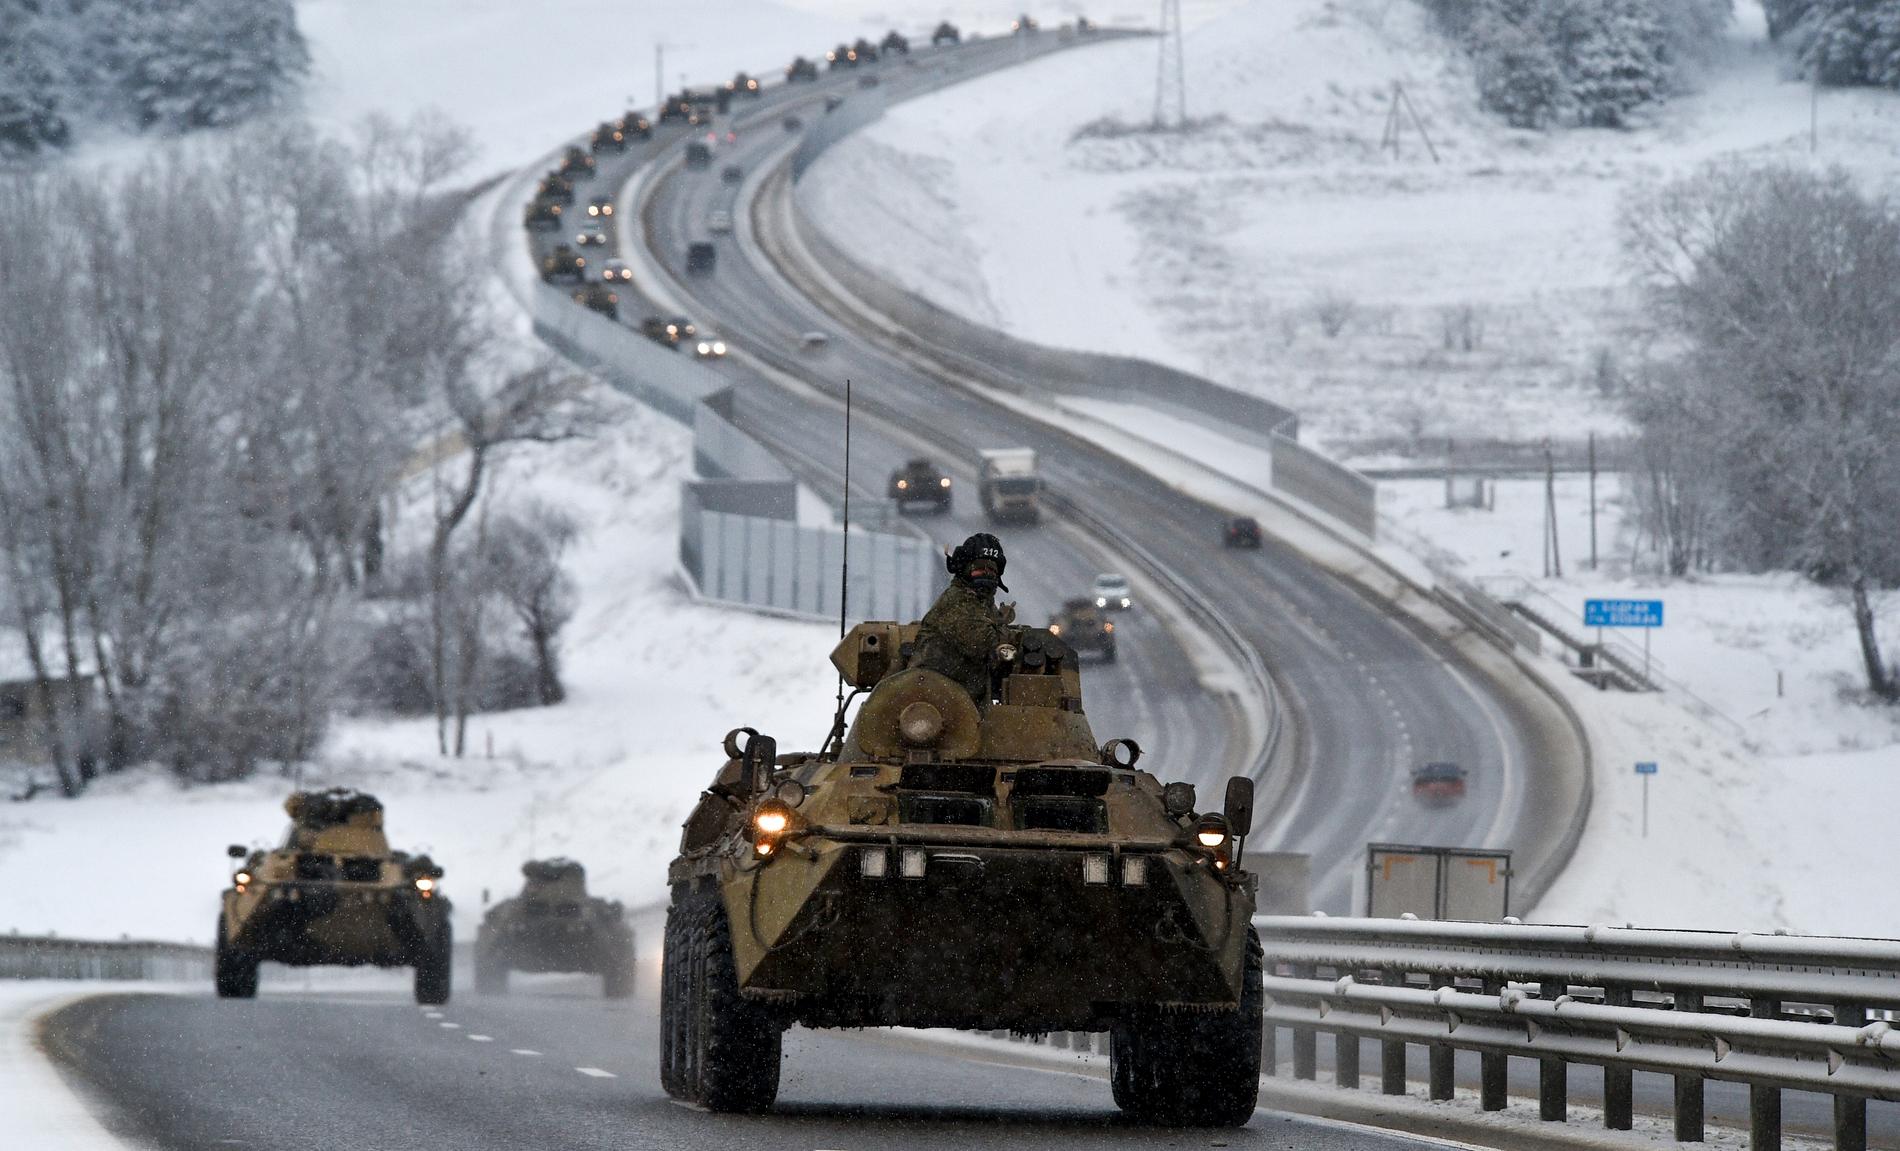  En konvoj ryska pansarfordon på en motorväg på Krim. Hundratals filmer florerar som visar hur ryska trupper, avfyringsramper och robotsystem transporteras mot den ukrainska gränsen.